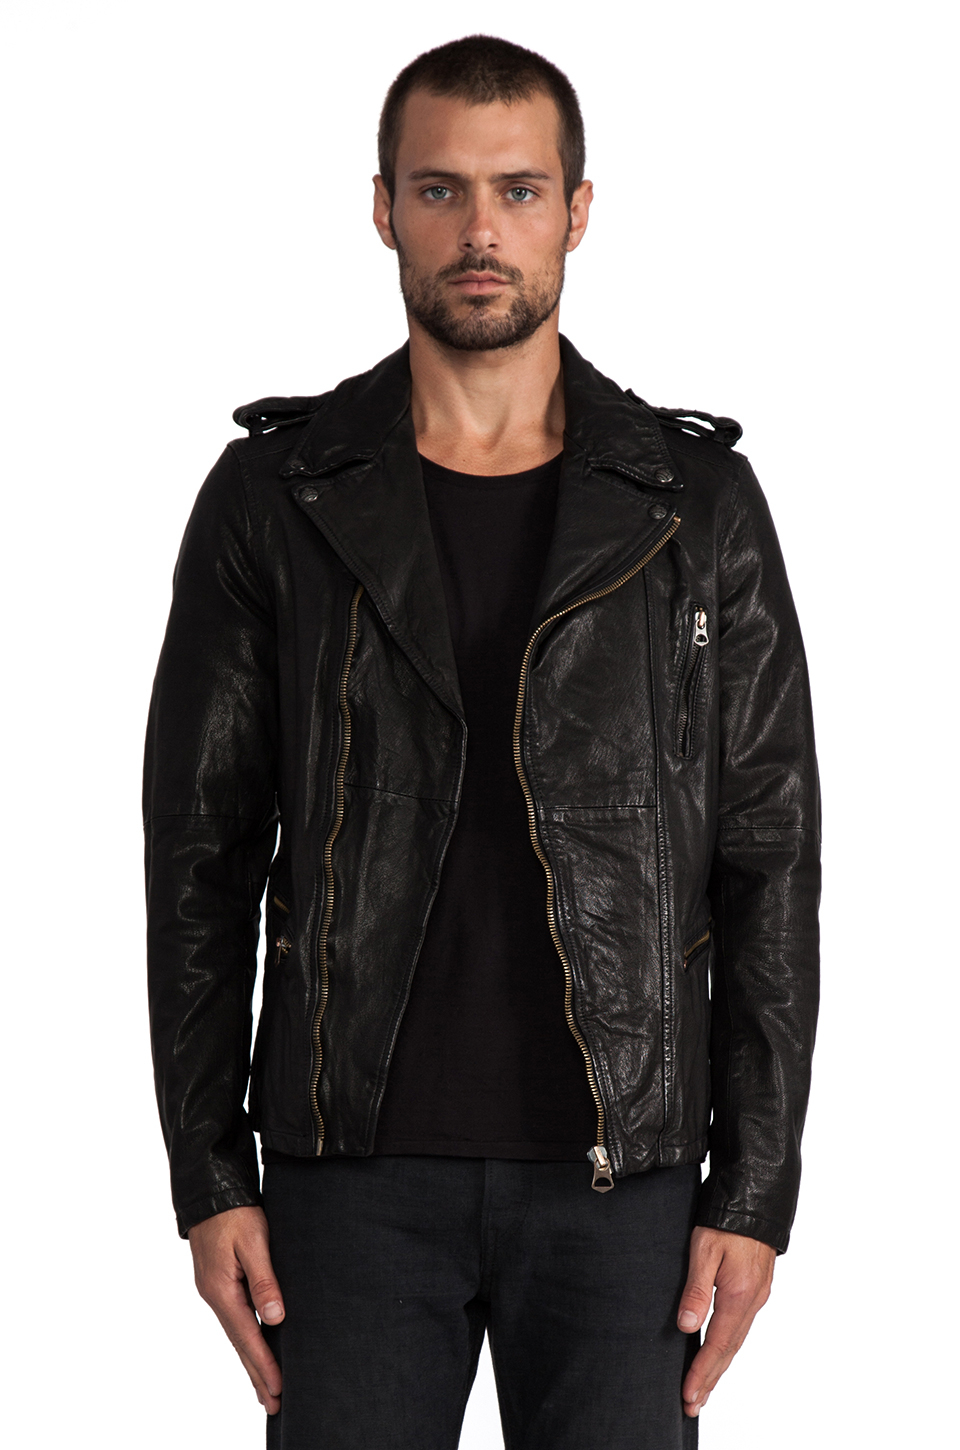 Scotch & Soda Leather Rocker Jacket in Black for Men - Lyst